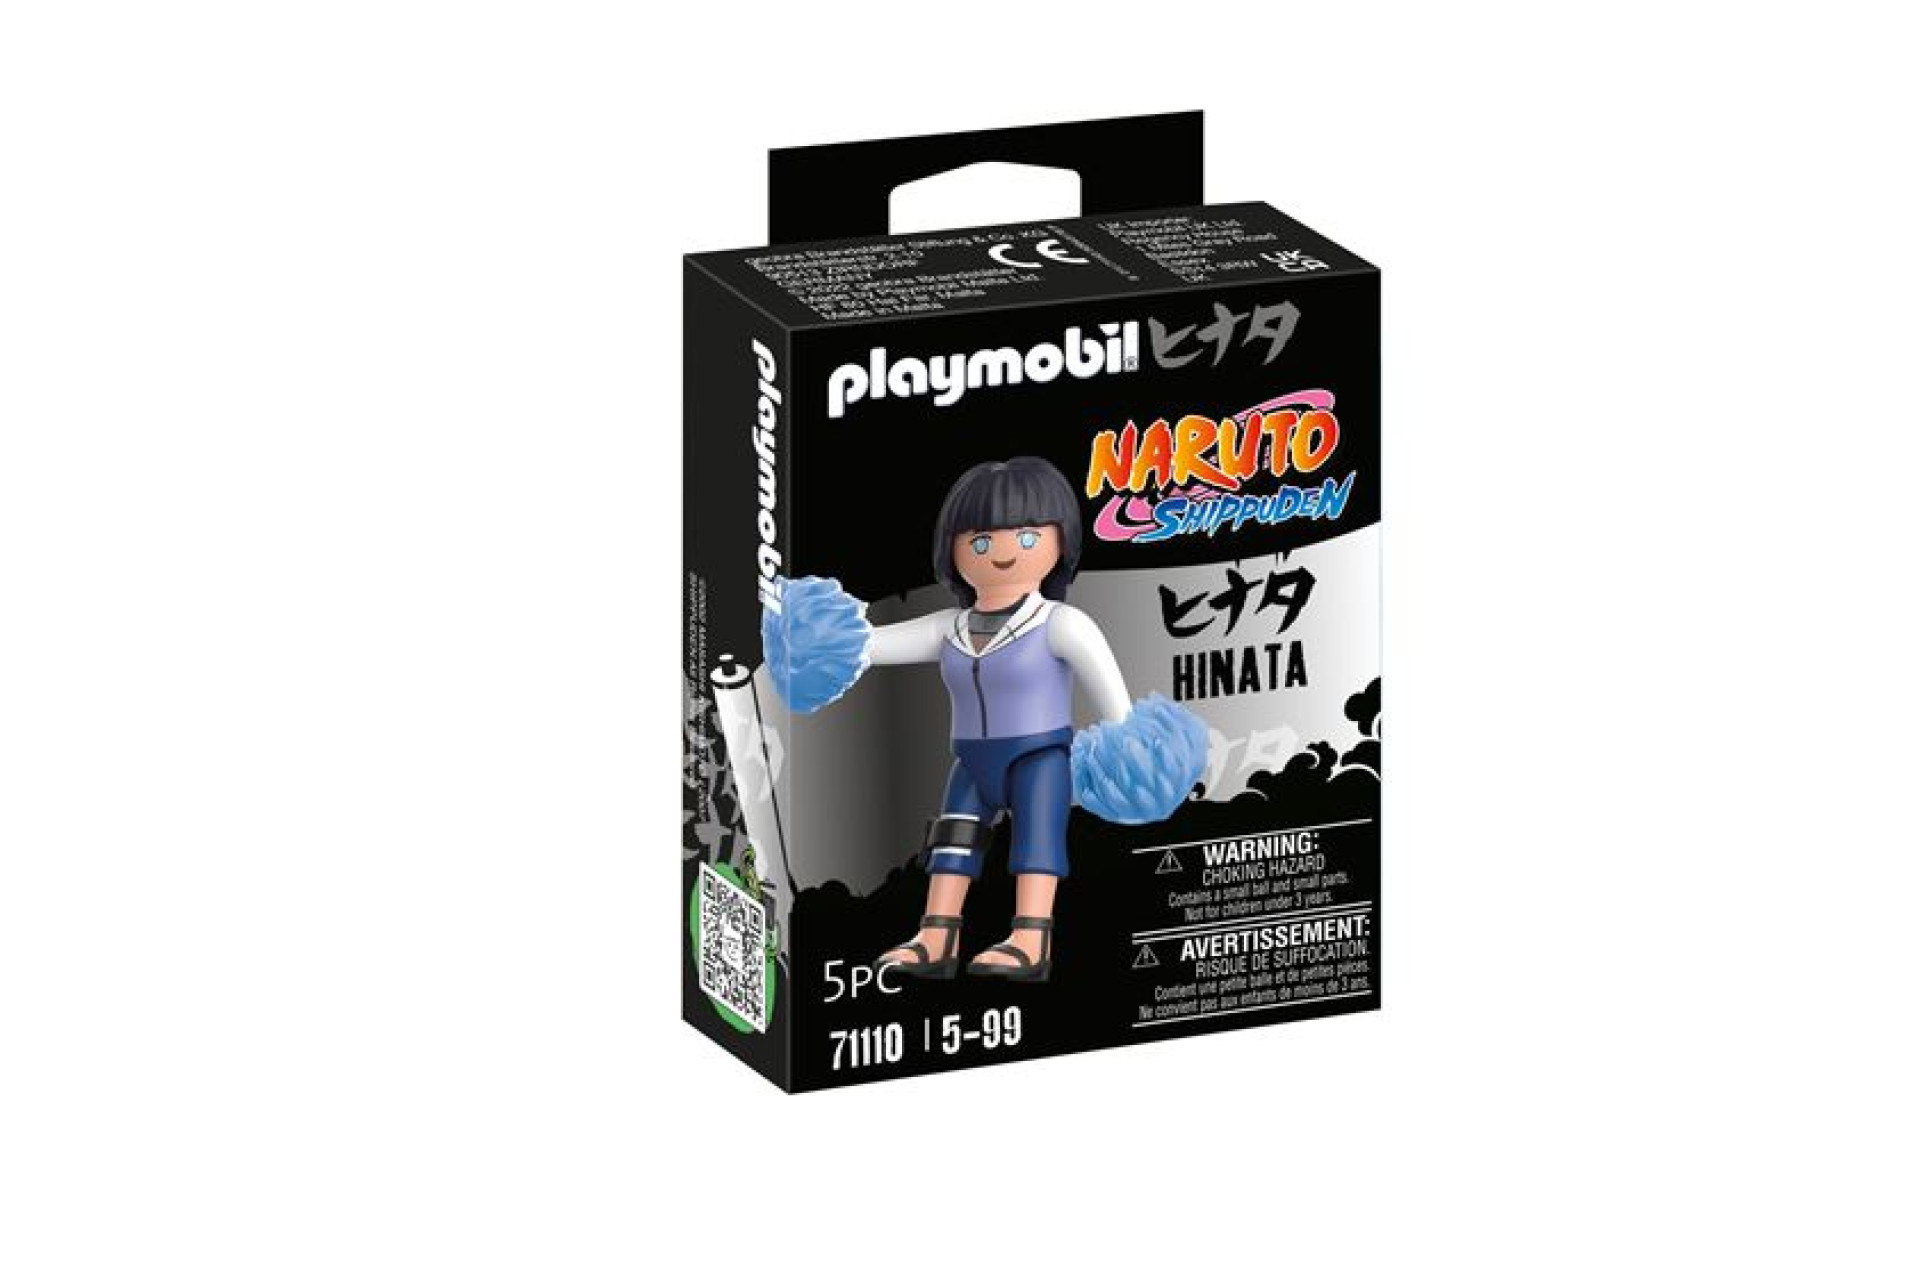 Acheter Playmobil Naruto 71110 Hinata